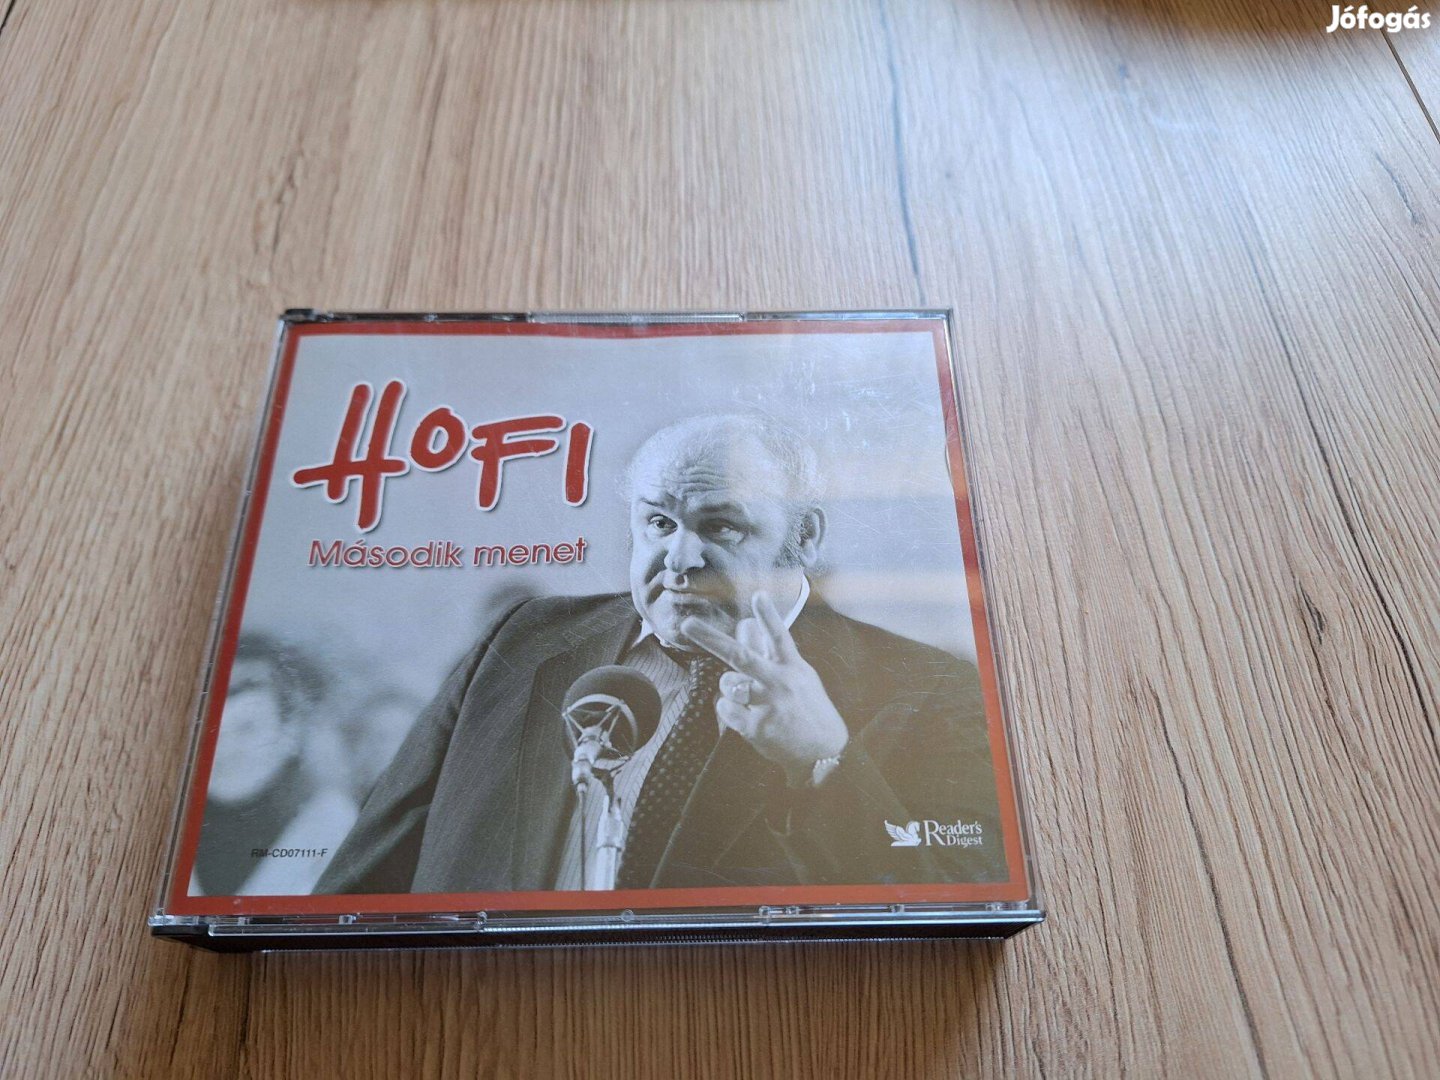 Hofi Második Menet 5 x CD, Album, lemez!